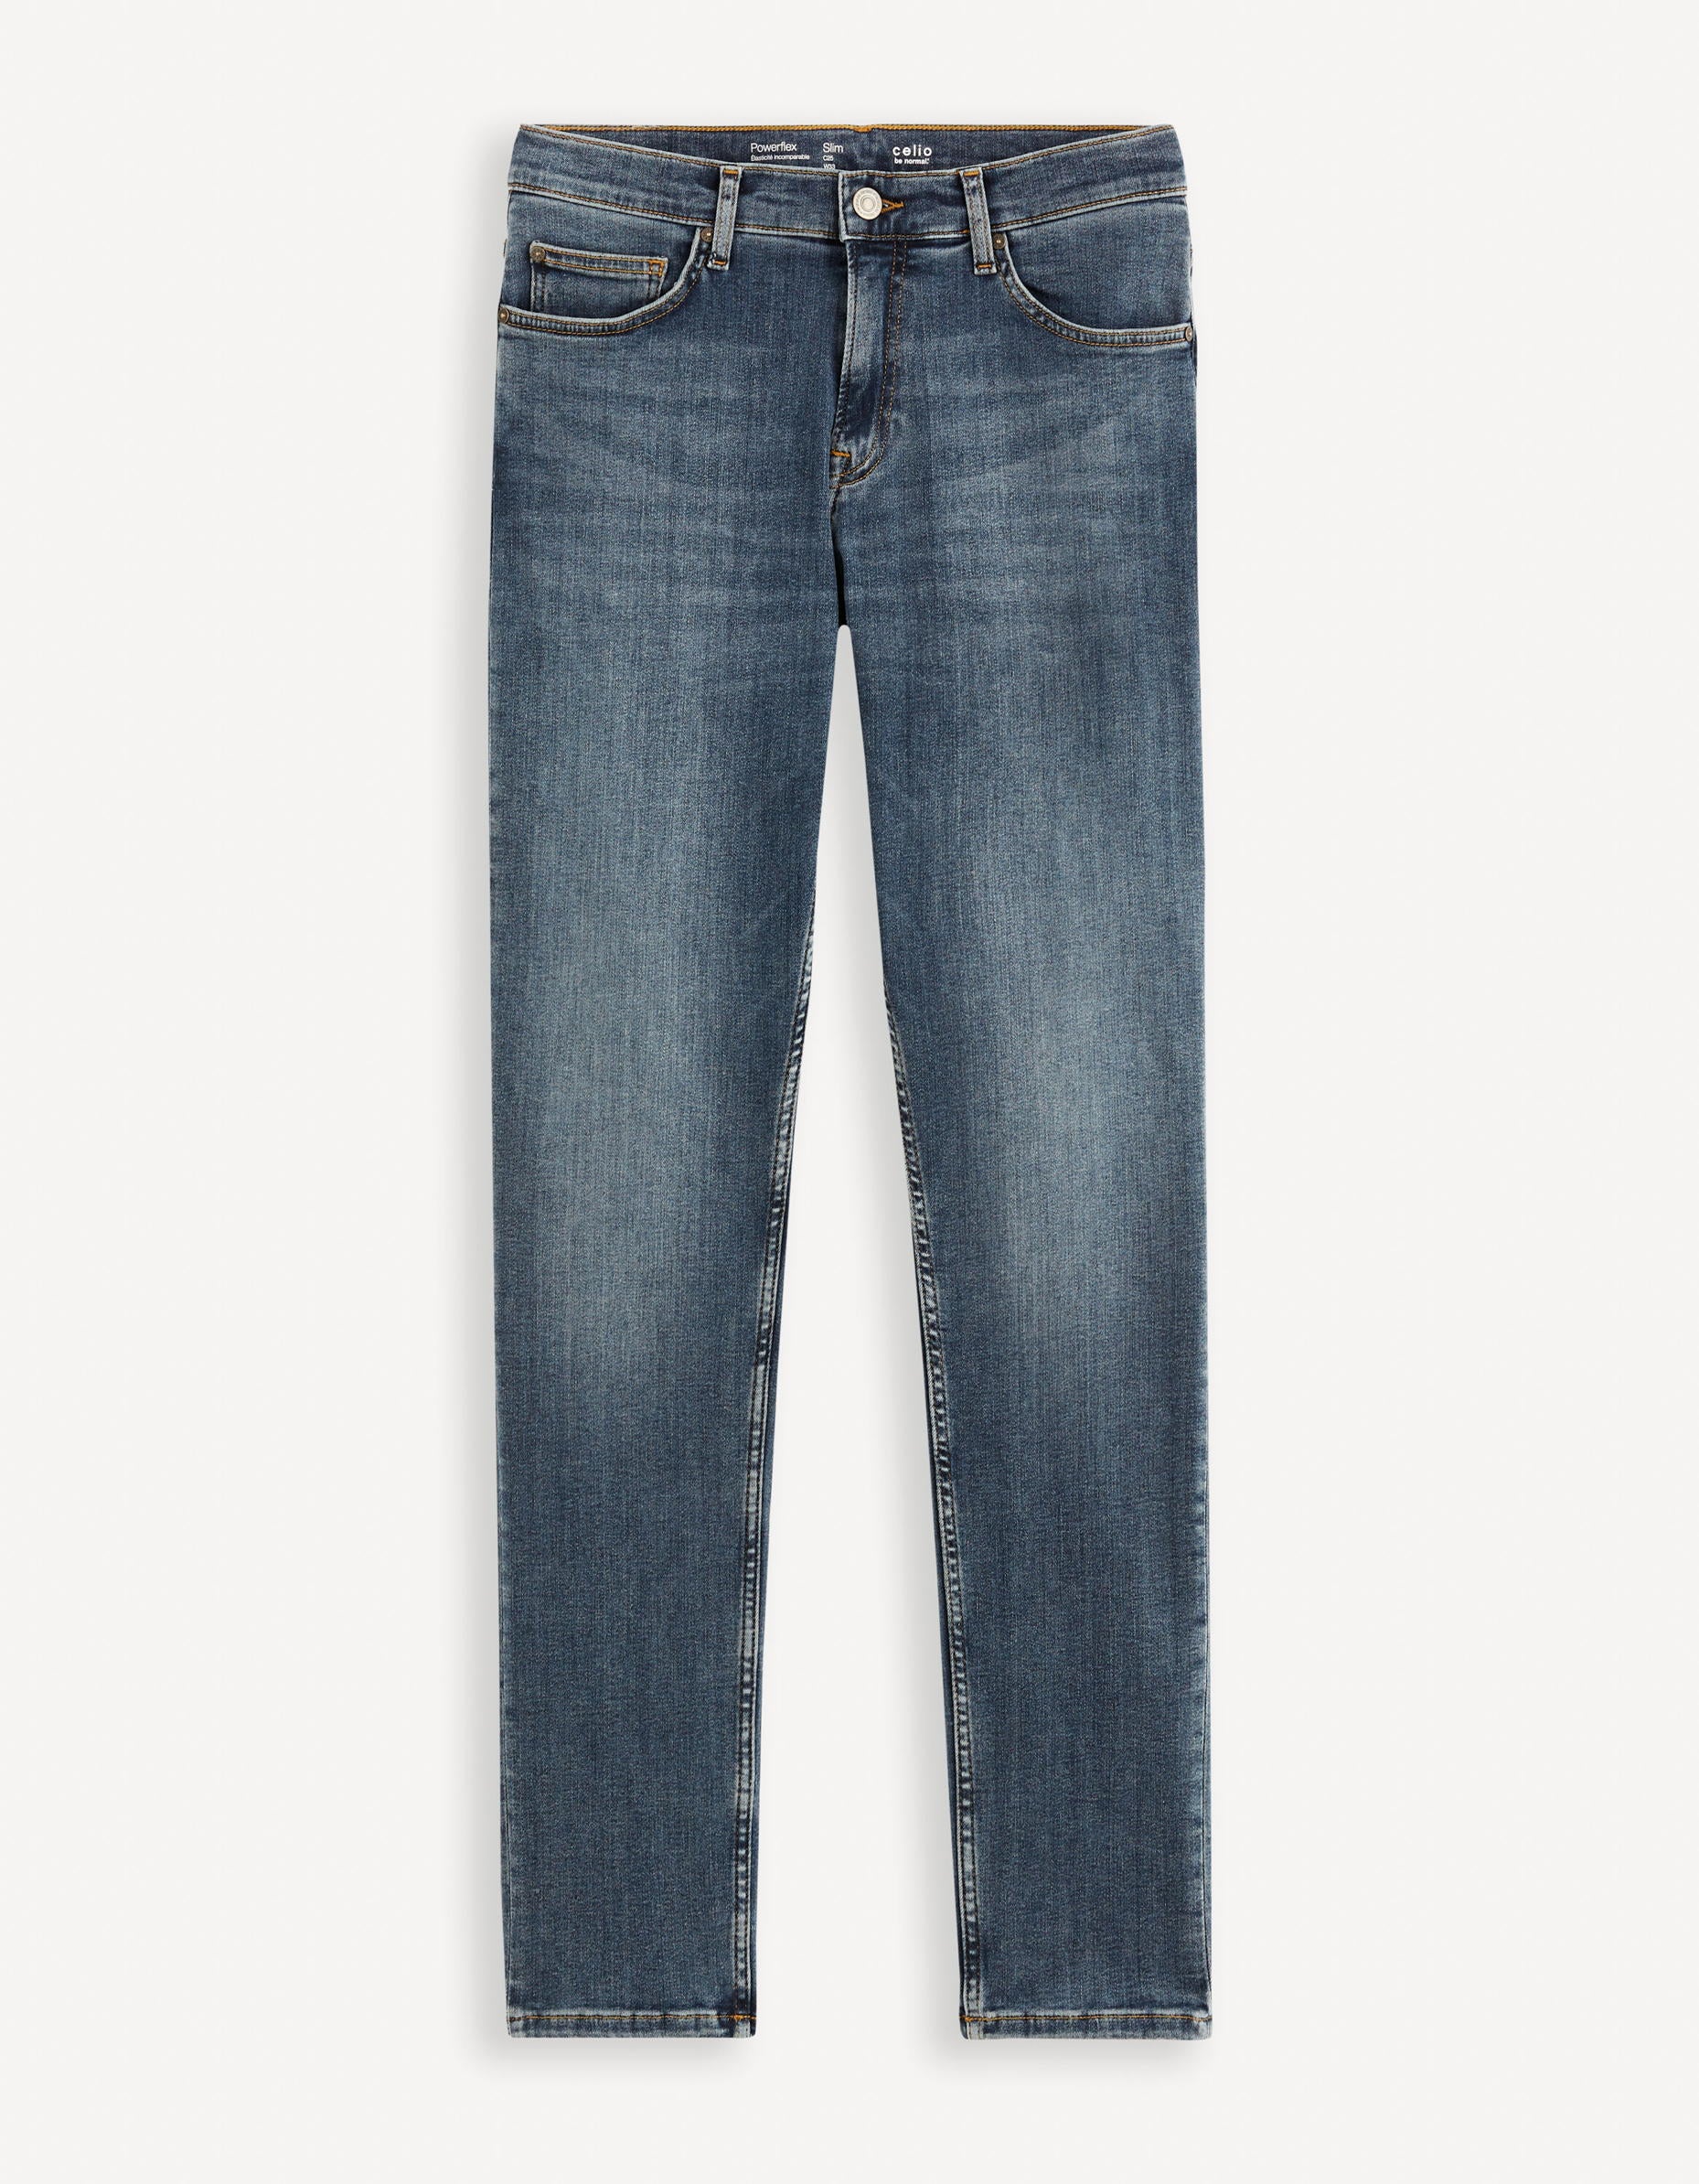 C25 Slim Stretch Jeans_DOW_BLUE STONE_02